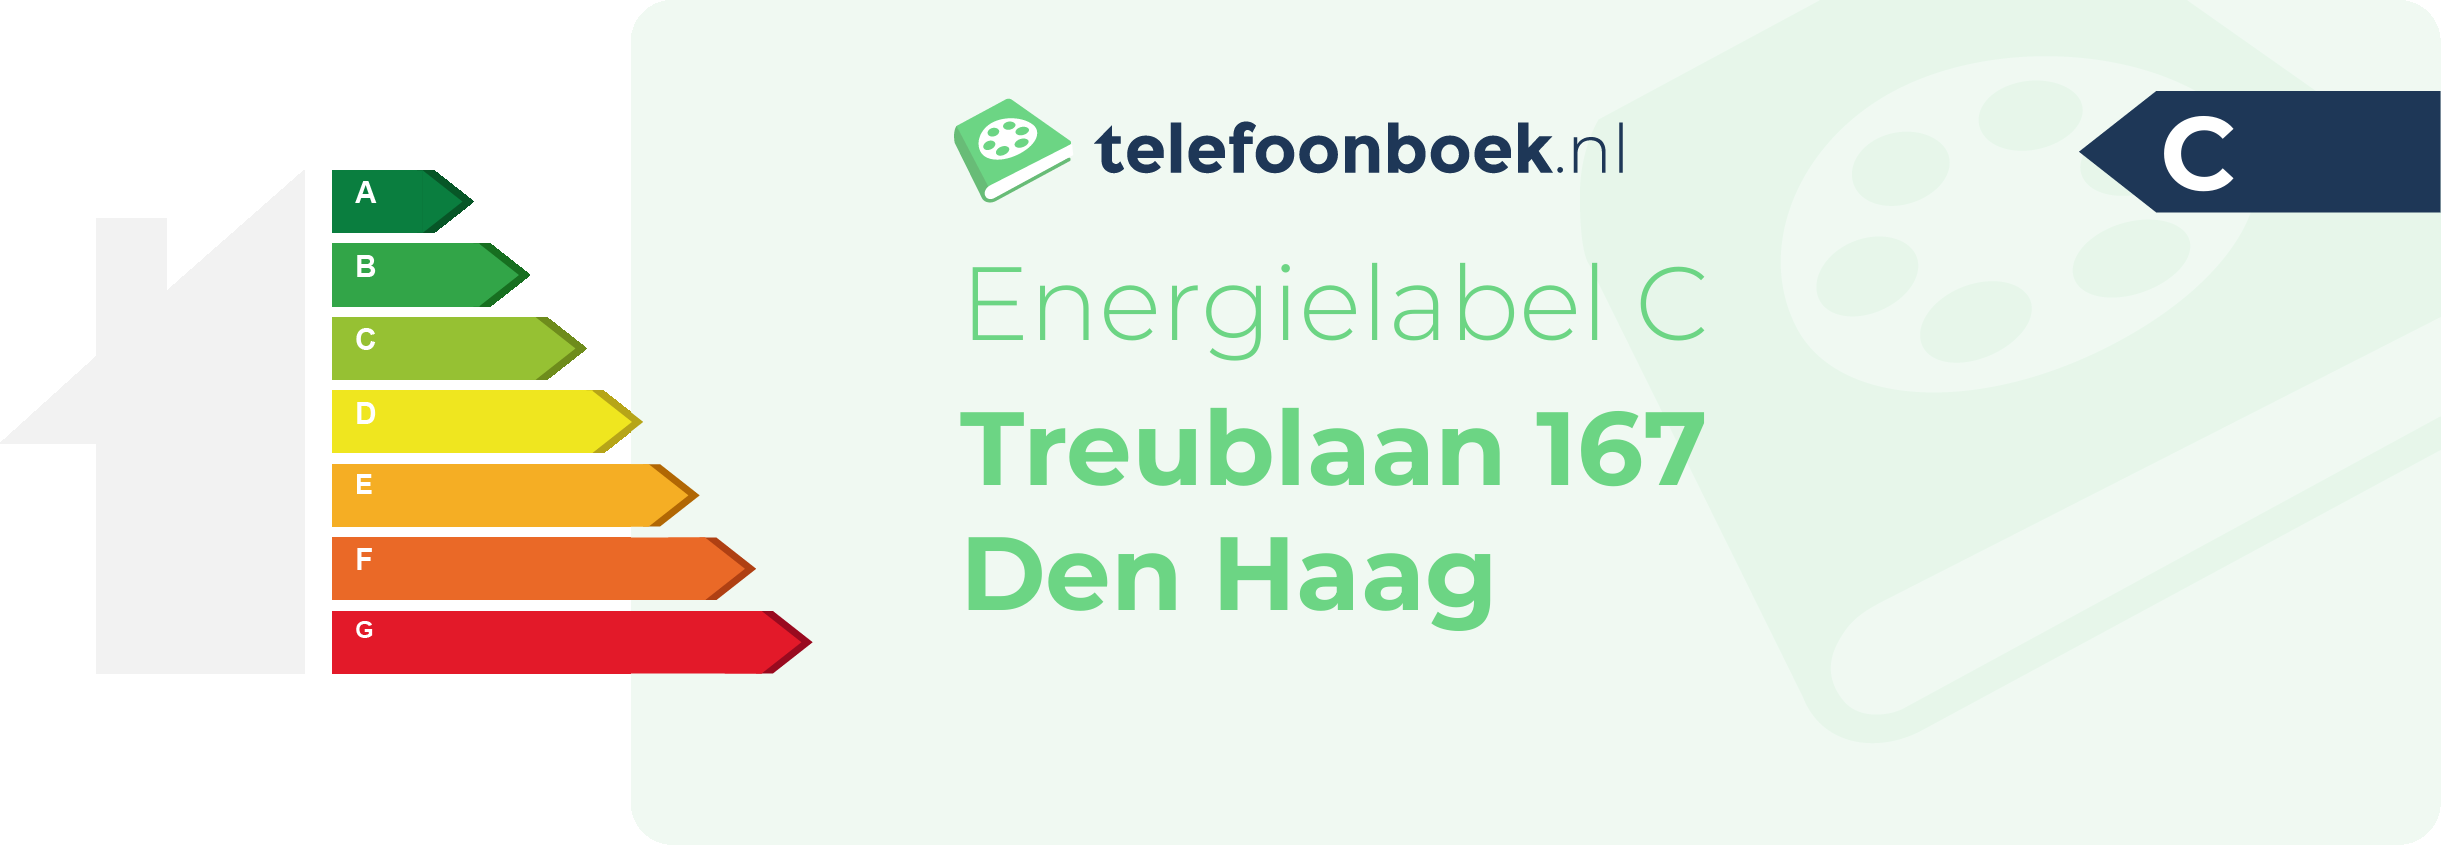 Energielabel Treublaan 167 Den Haag